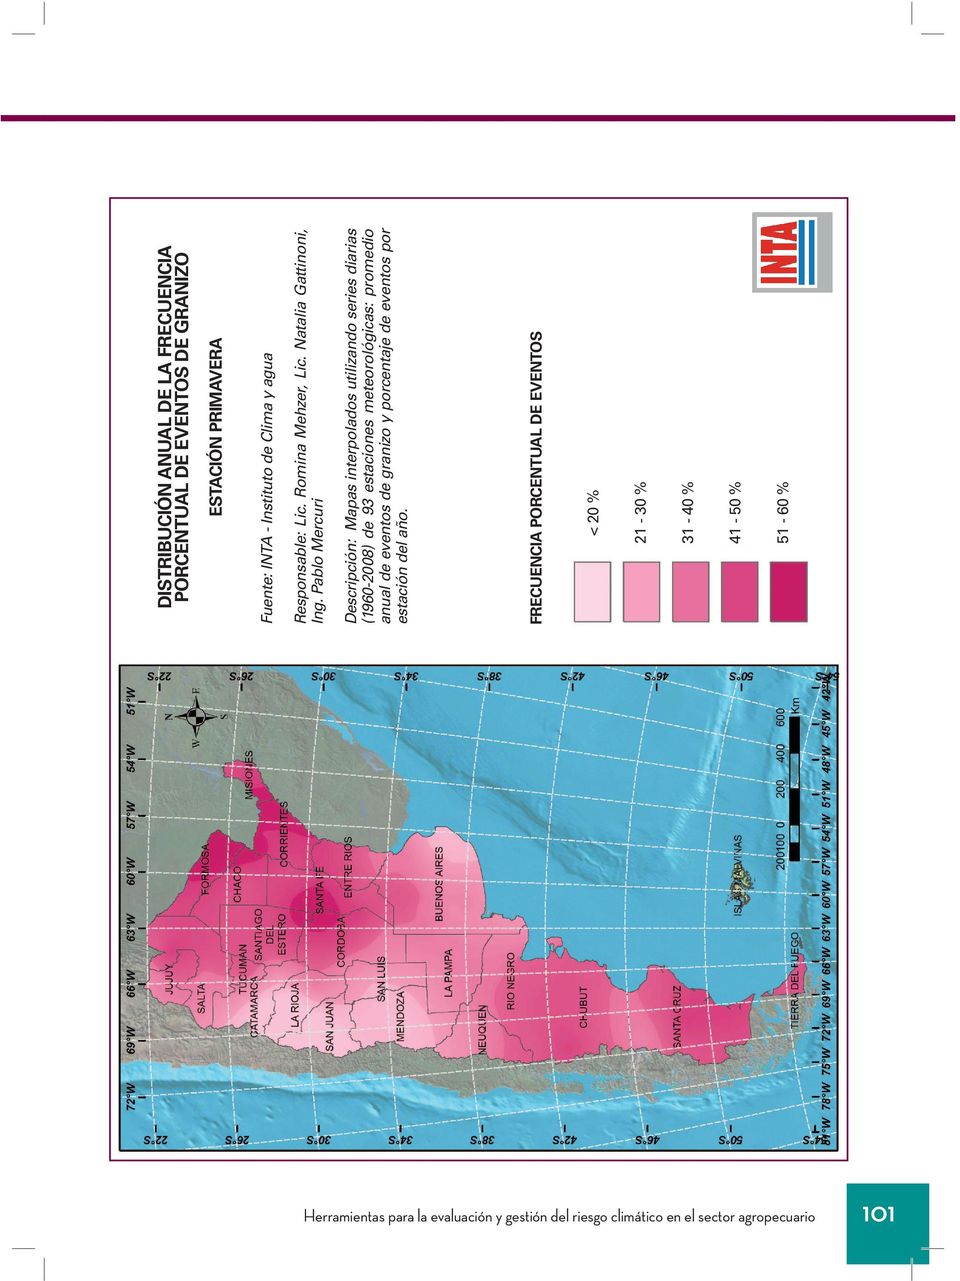 Pablo Mercuri Descripción: Mapas interpolados utilizando series diarias (1960-2008) de 93 estaciones meteorológicas: promedio anual de